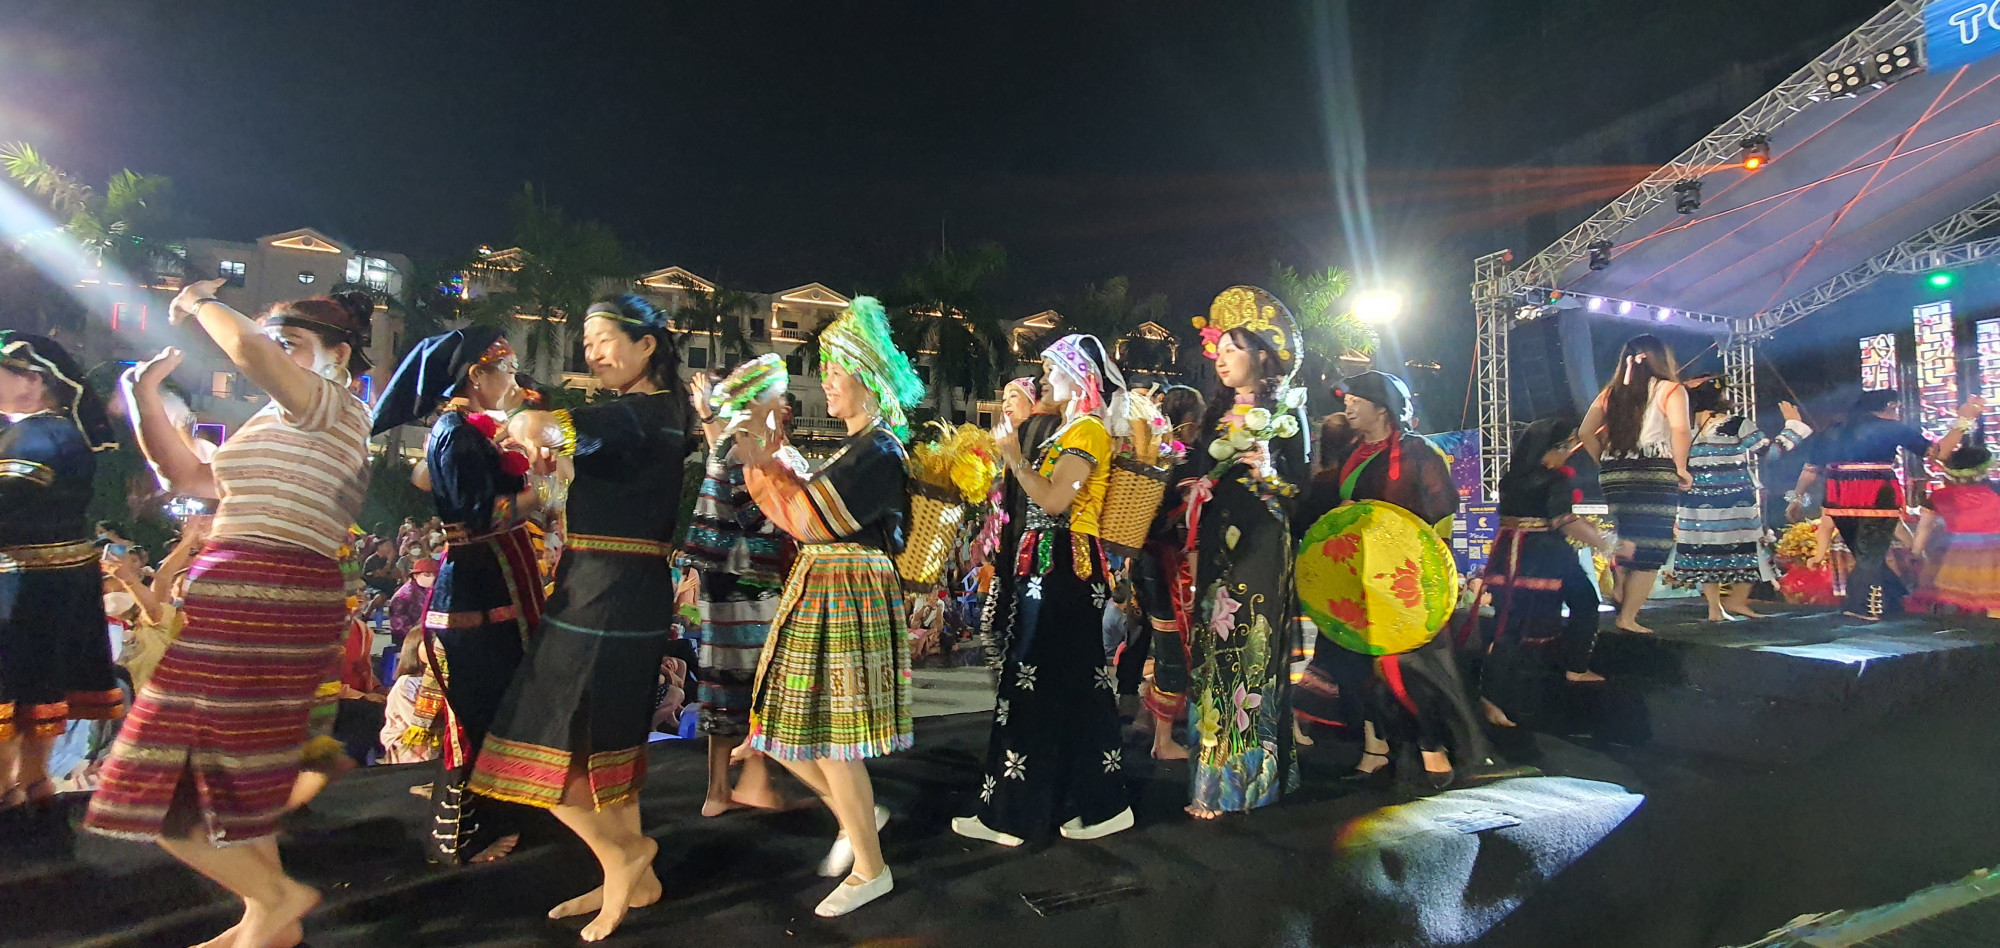 Chương trình với 40 bộ trang phục đại diện cho các dân tộc ở Việt Nam. Được biết, chương trình sẽ tiếp tục trình diễn vào tối ngày 31/12 tại Quảng trường Hòa Bình (Khu dân cư City Land Park Hills, phường 10, quận Gò Vấp). 